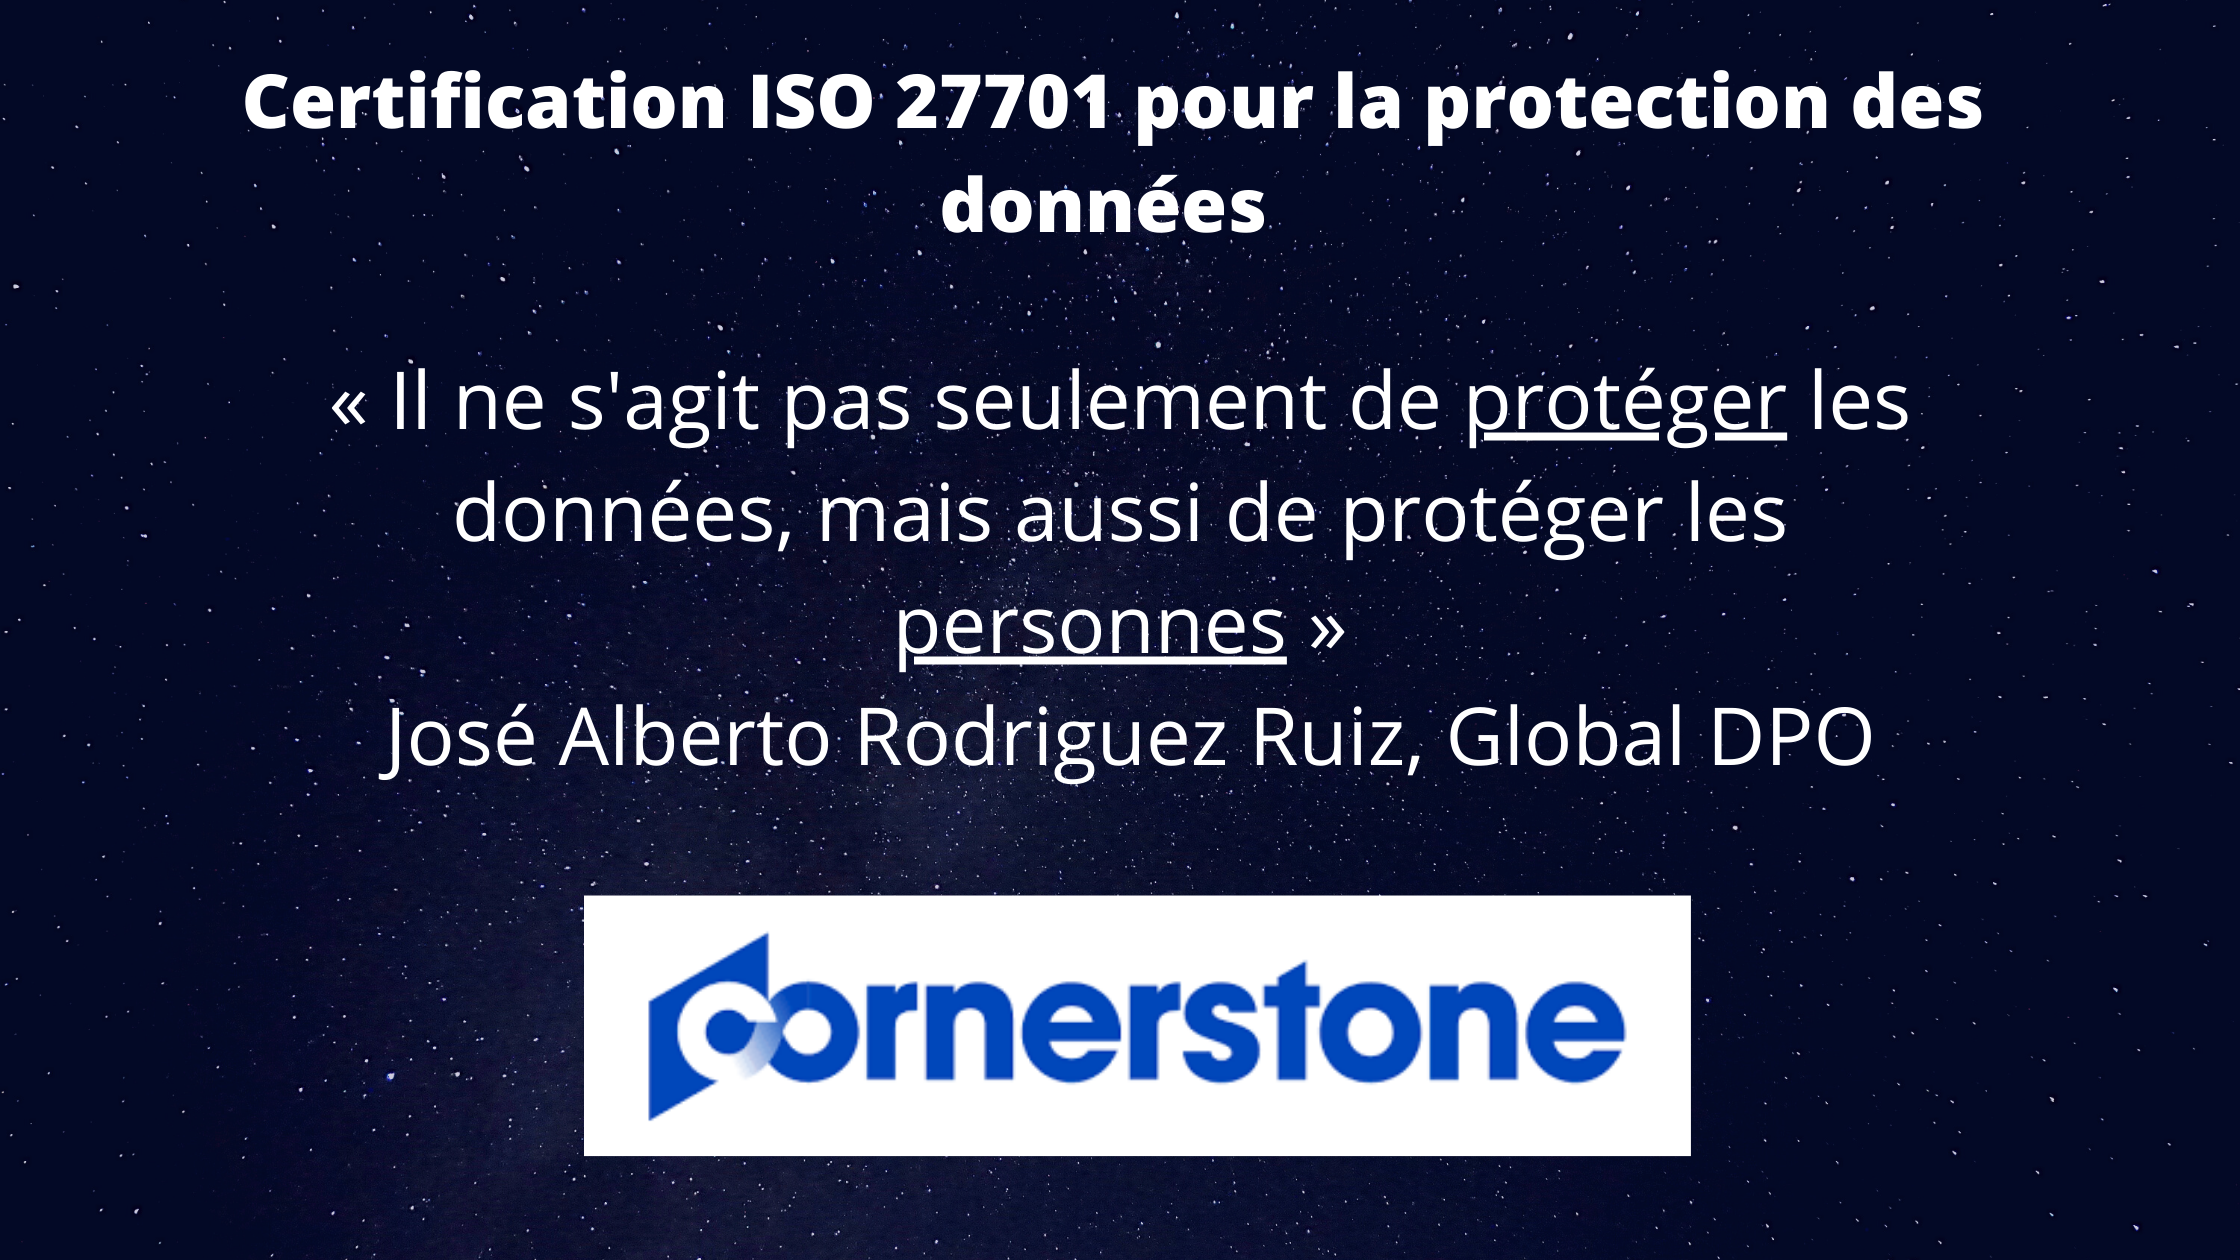 Cornerstone, obtenir la certification ISO 27701 pour la protection des données